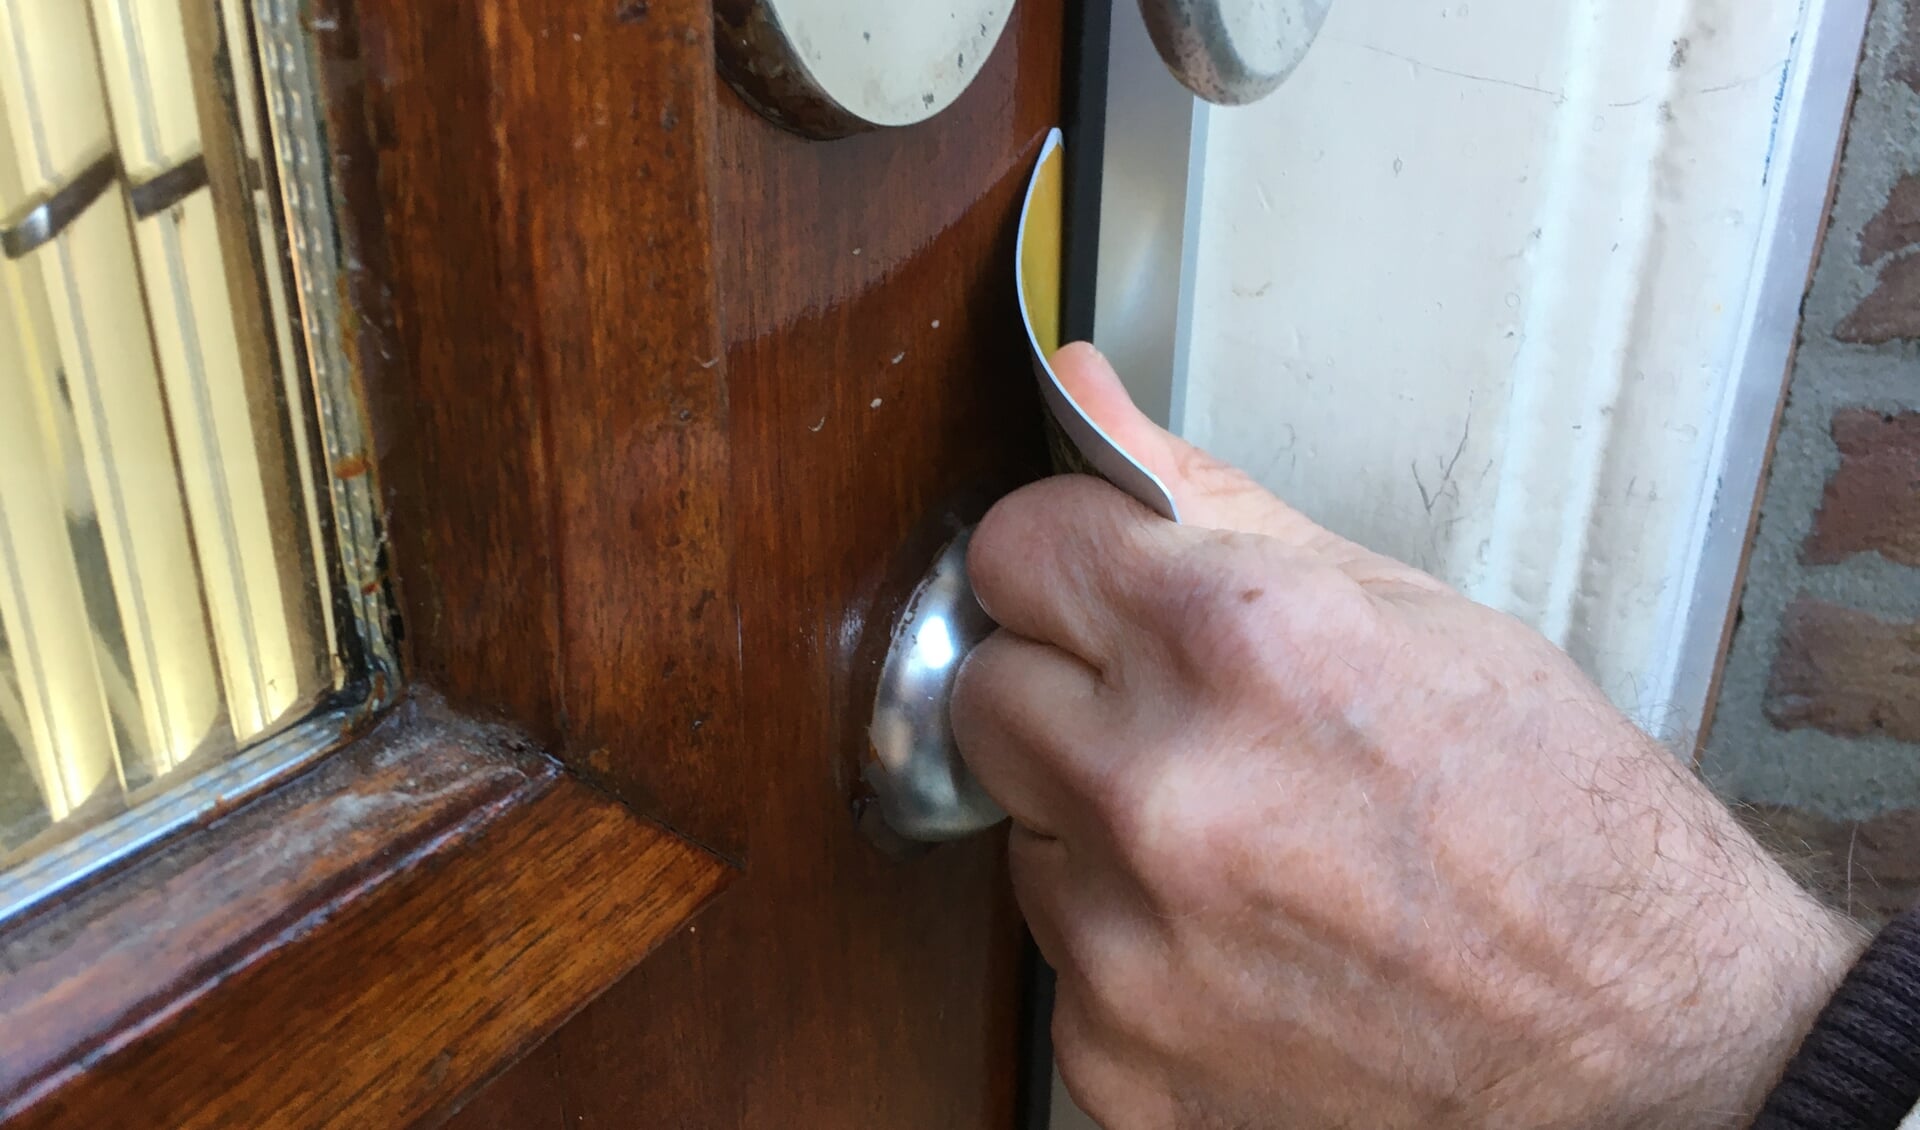 Inbrekers gebruiken veelal pasjes om een deur te openen.